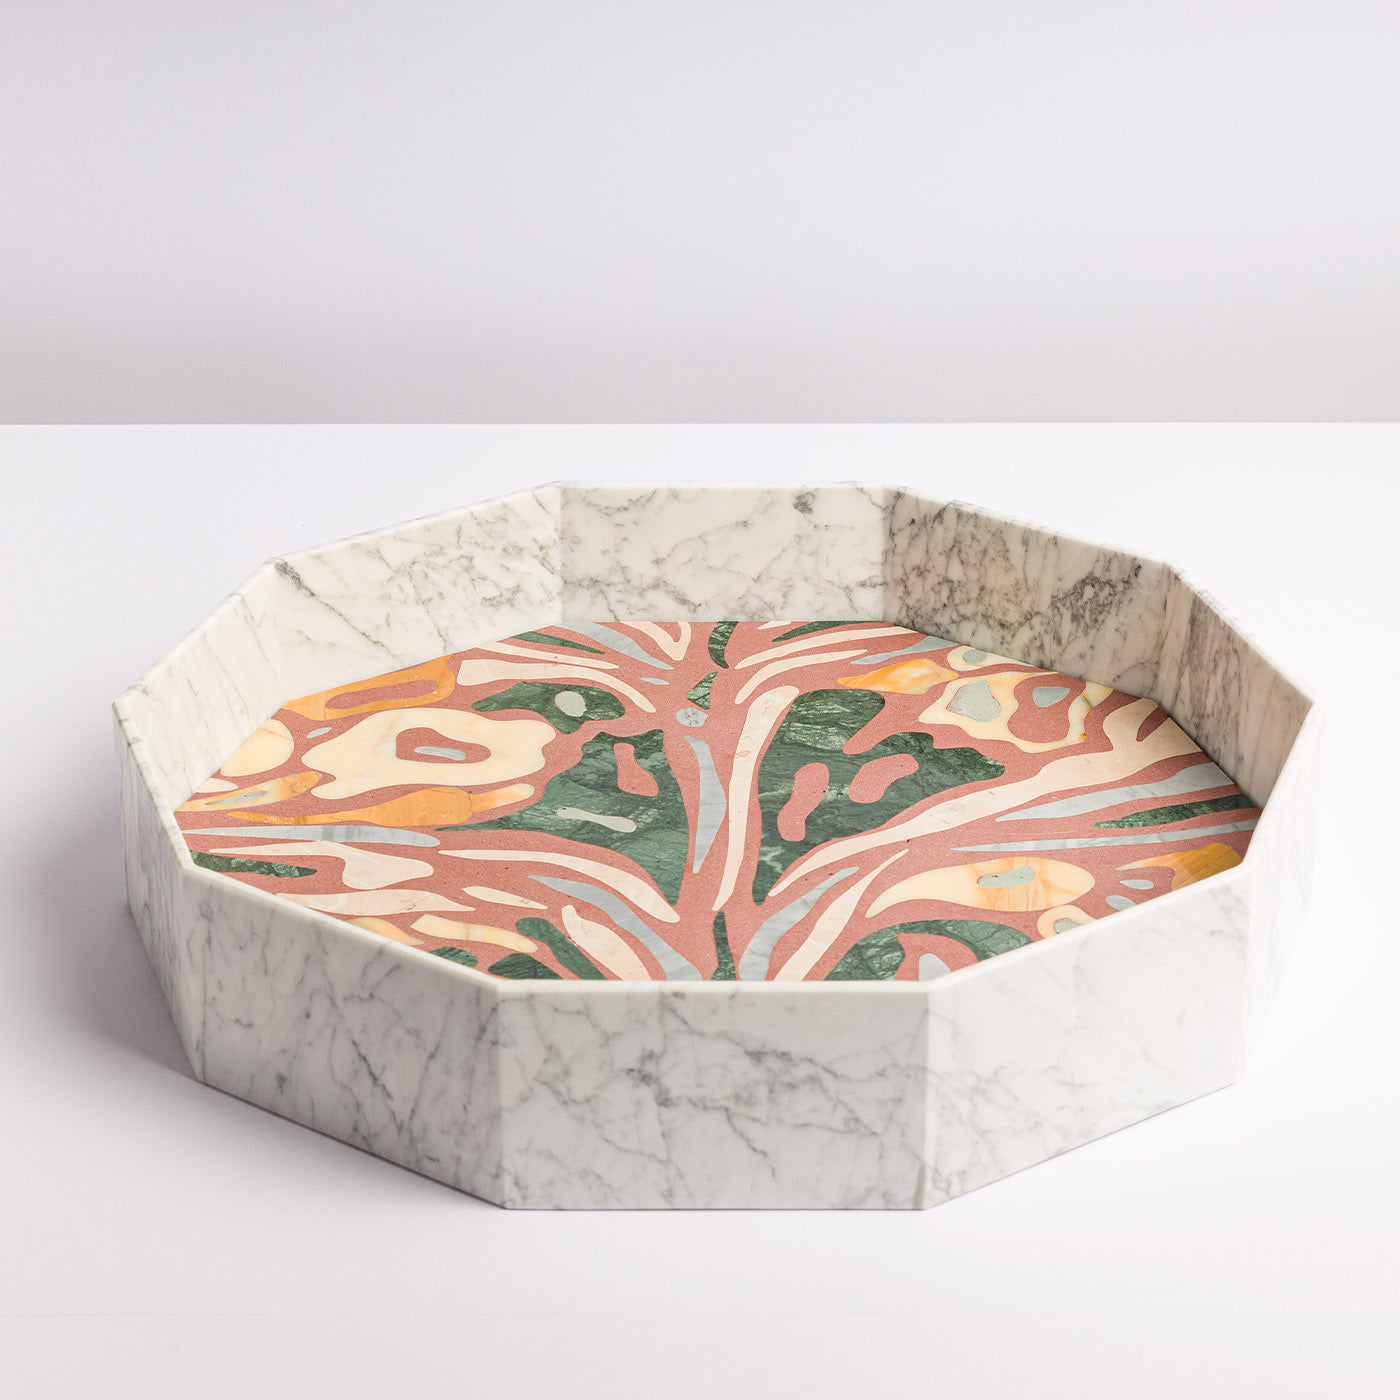 Marble Marbling Decagonal Tray by Zanellato&Bortotto #2 - Alternative view 2